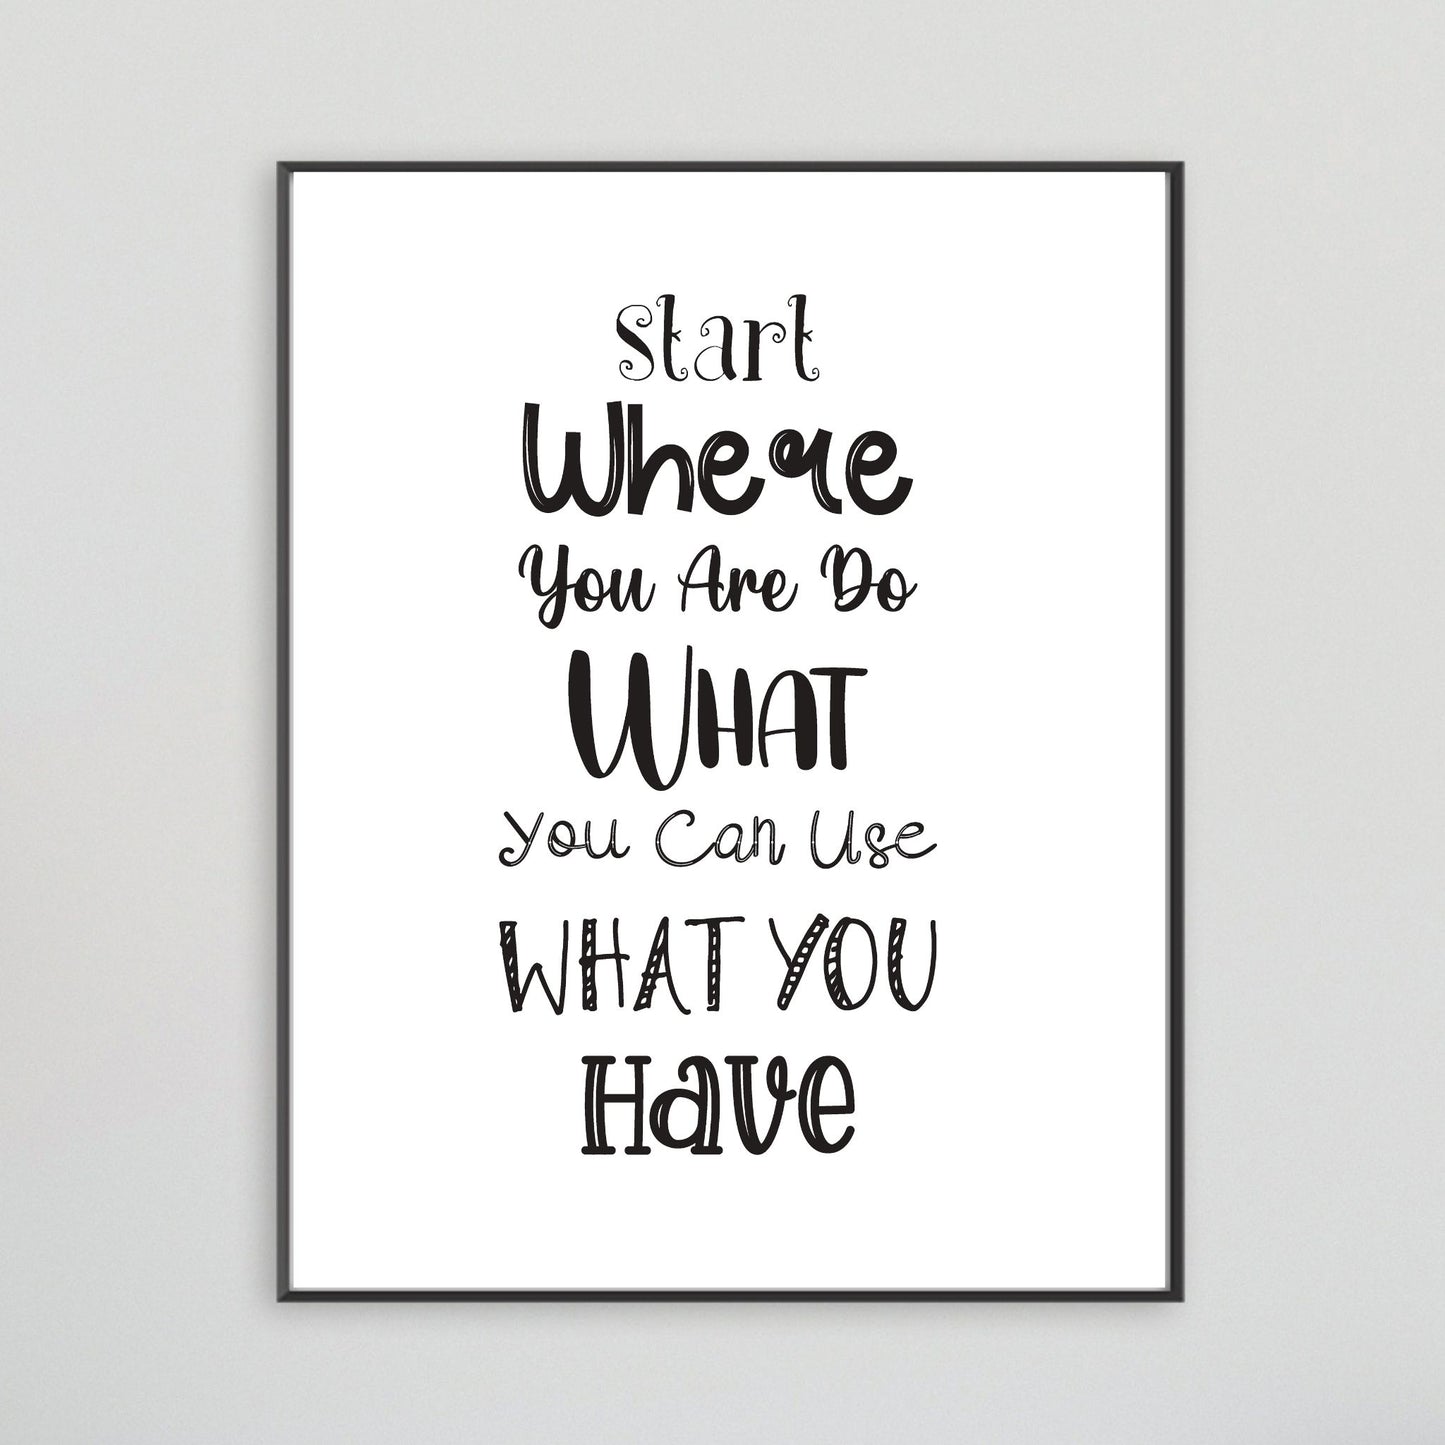 Grafisk tekstplakat med tekst "Start where you are, do what you can, use what you have" med sort tekst på hvit bakgrunn. Illustrasjon viser plakat i sort ramme på en vegg.